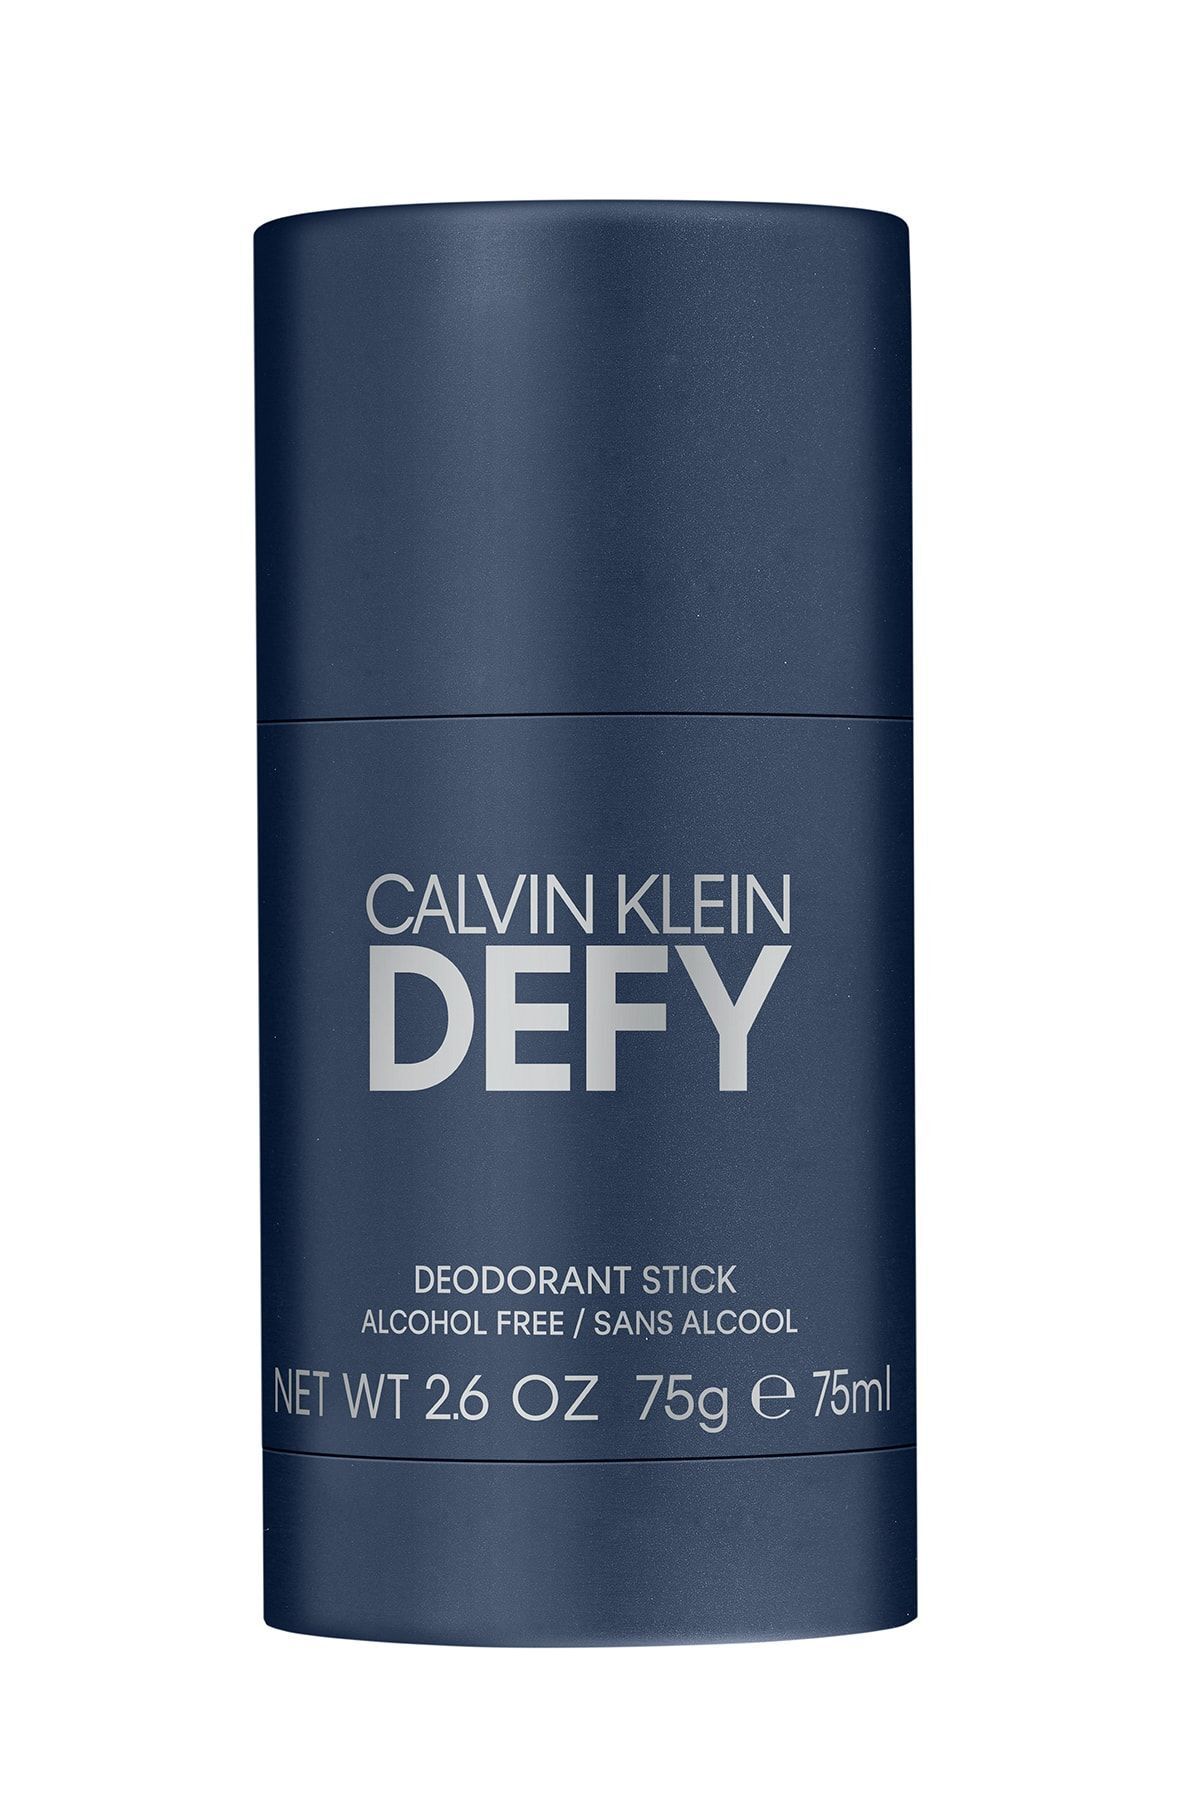 Calvin Klein Defy Deostick 75g